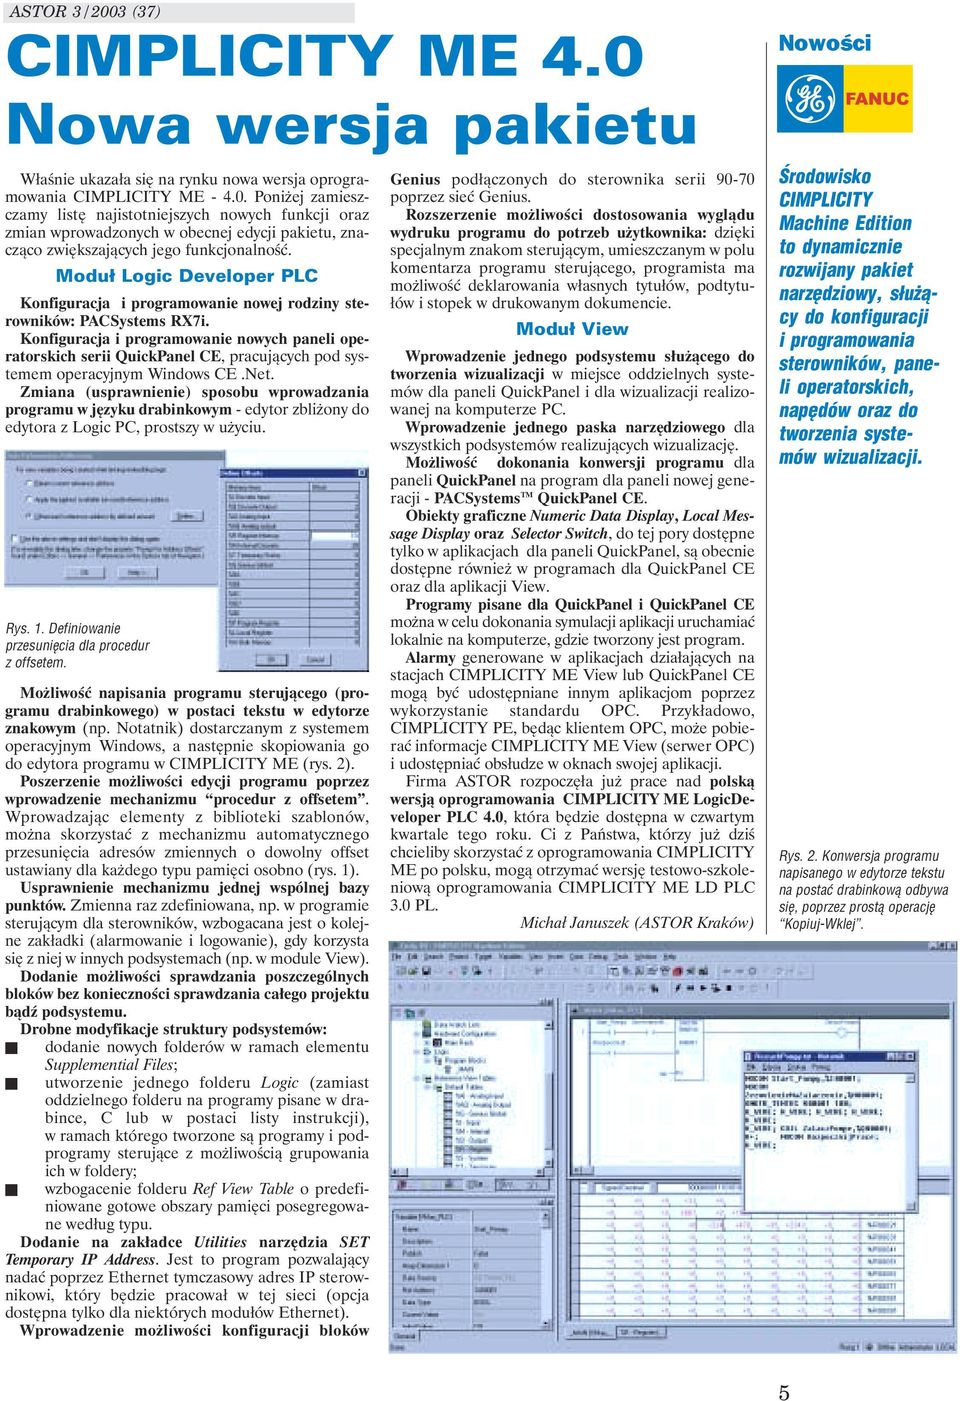 Konfiguracja i programowanie nowych paneli operatorskich serii QuickPanel CE, pracujących pod systemem operacyjnym Windows CE.Net.